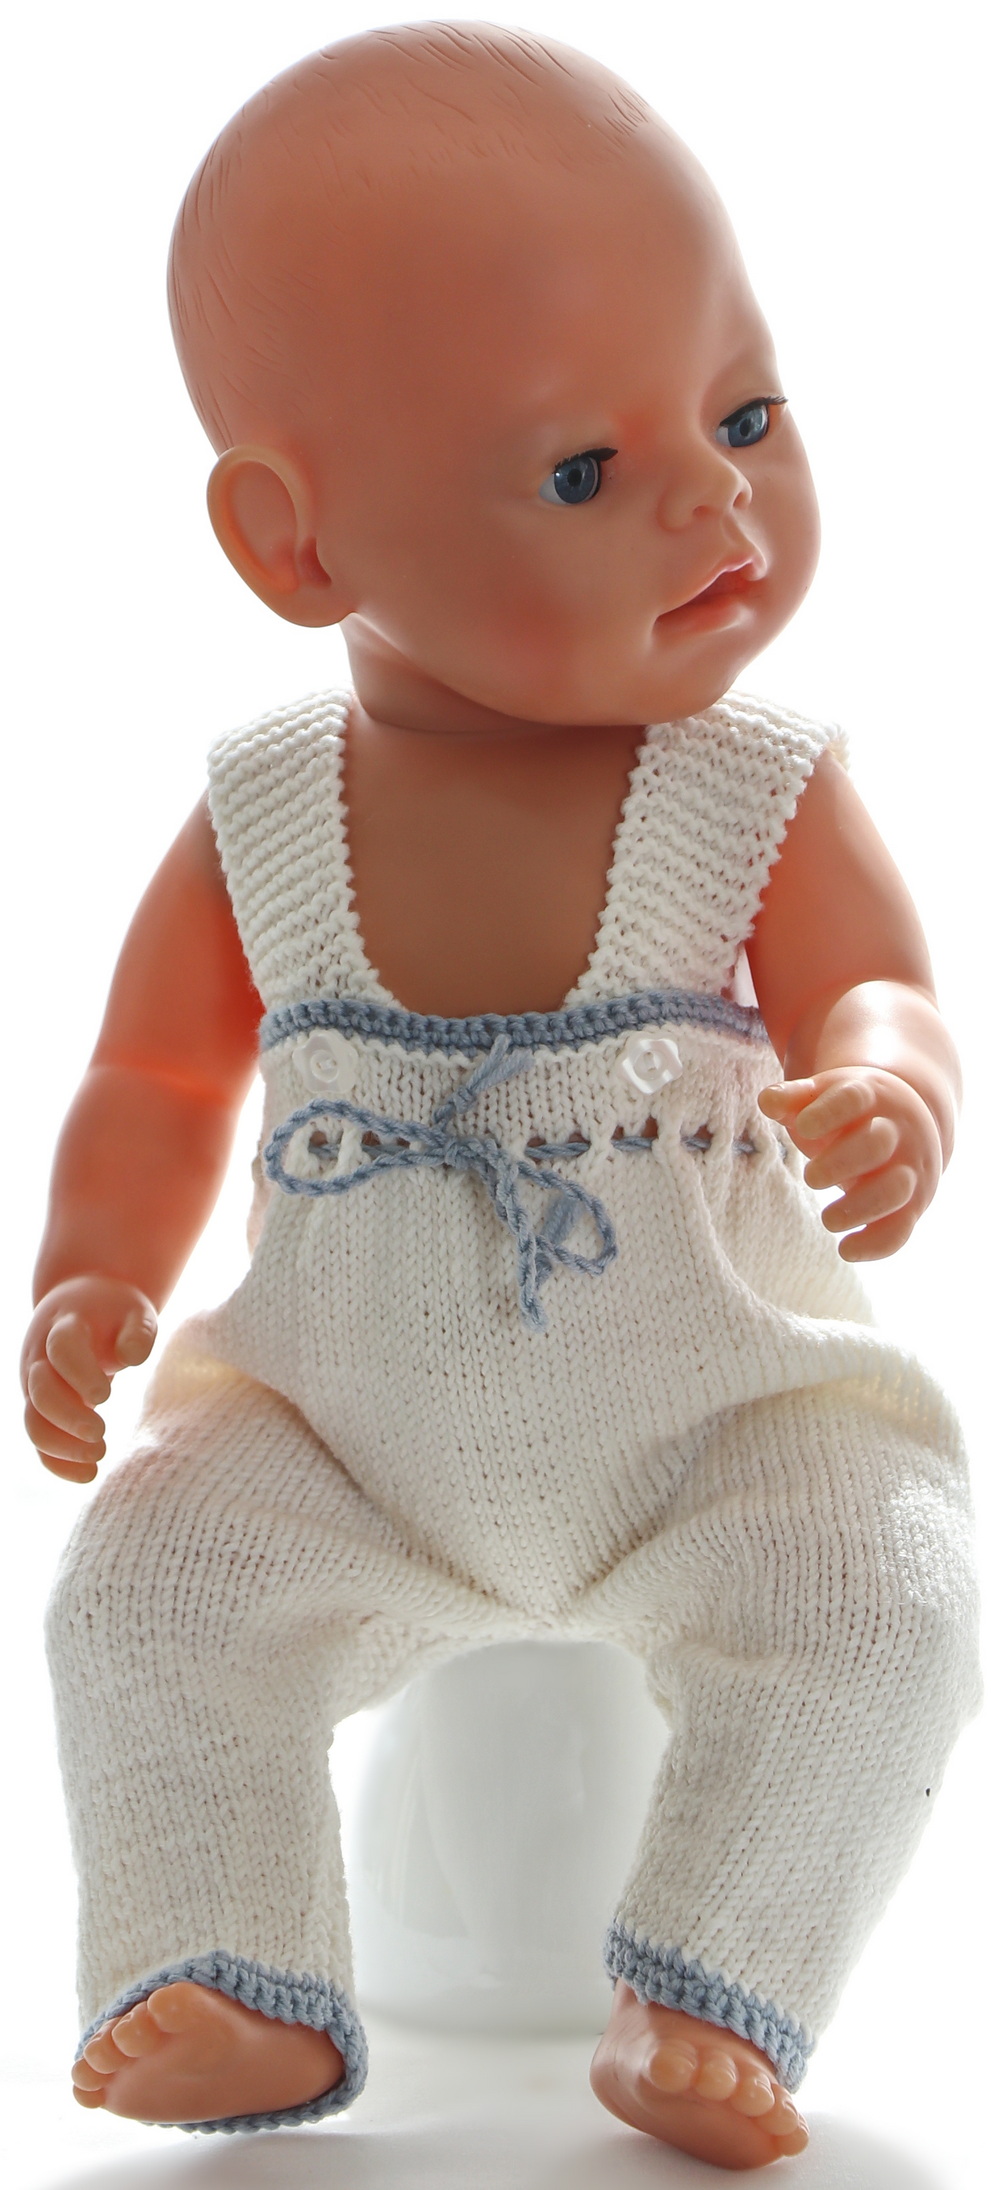 0232d-10-knitting-patterns-for-american-girl-dolls.jpg